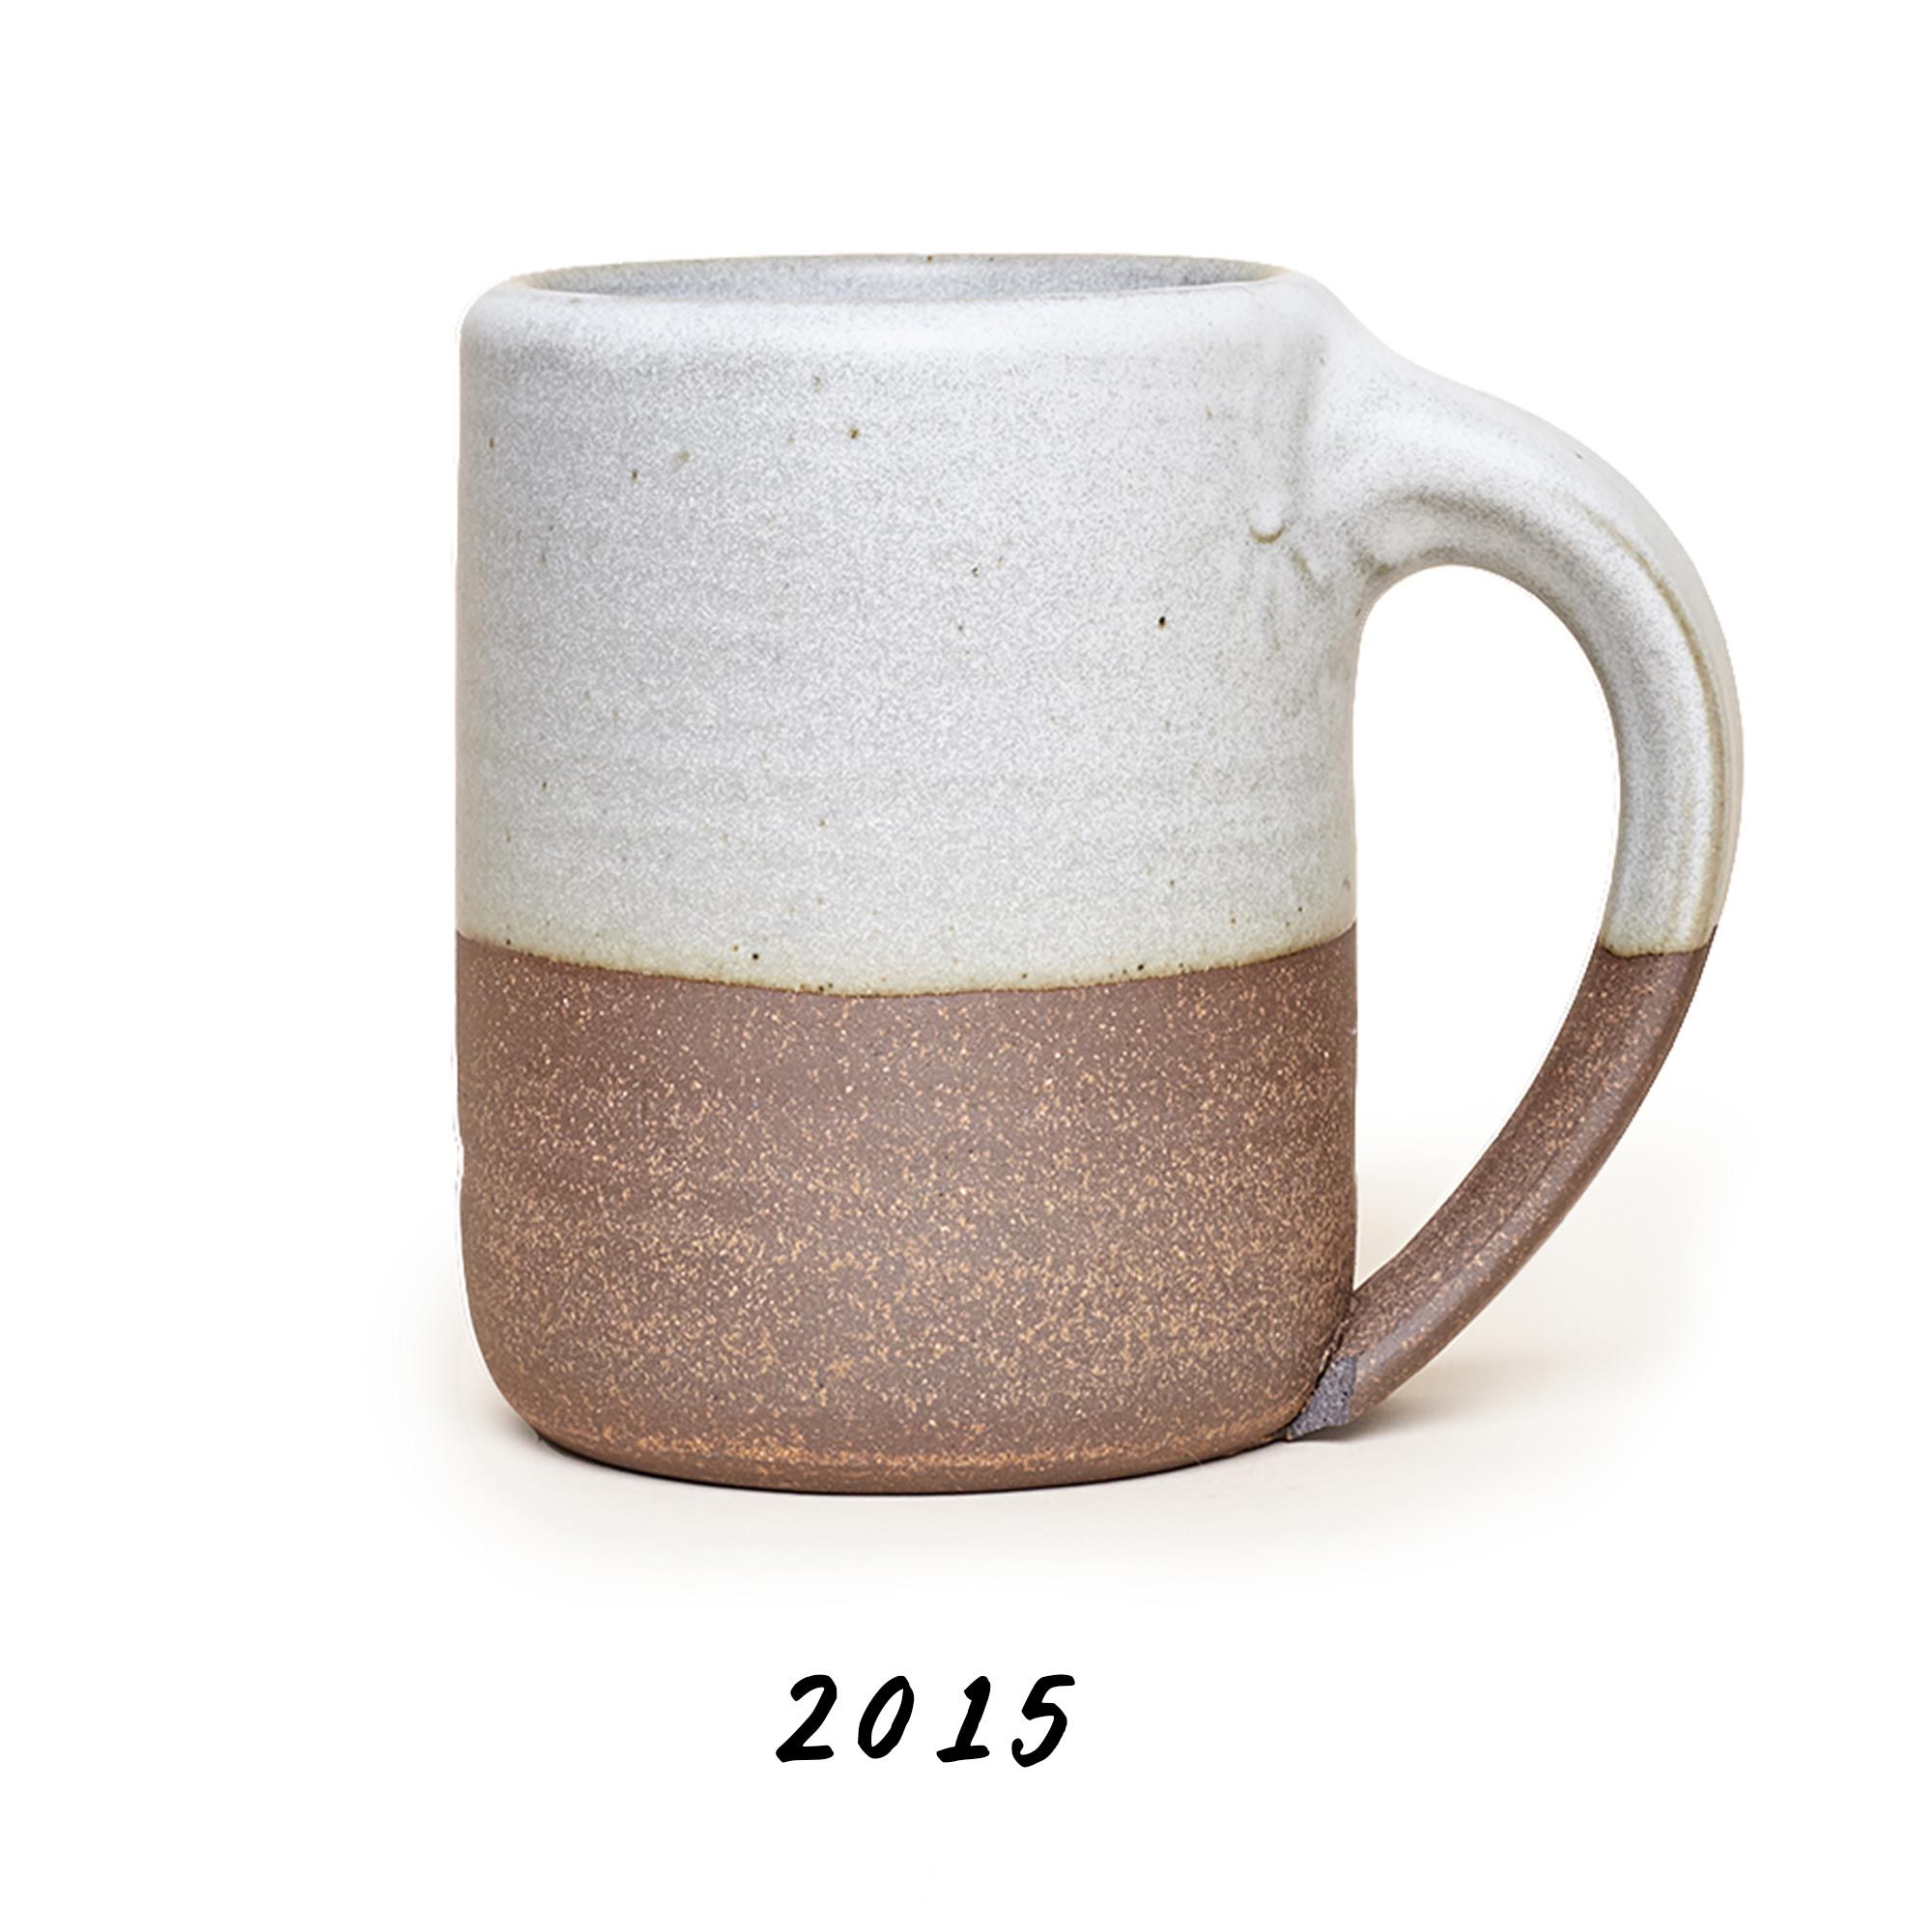 2015 Mug